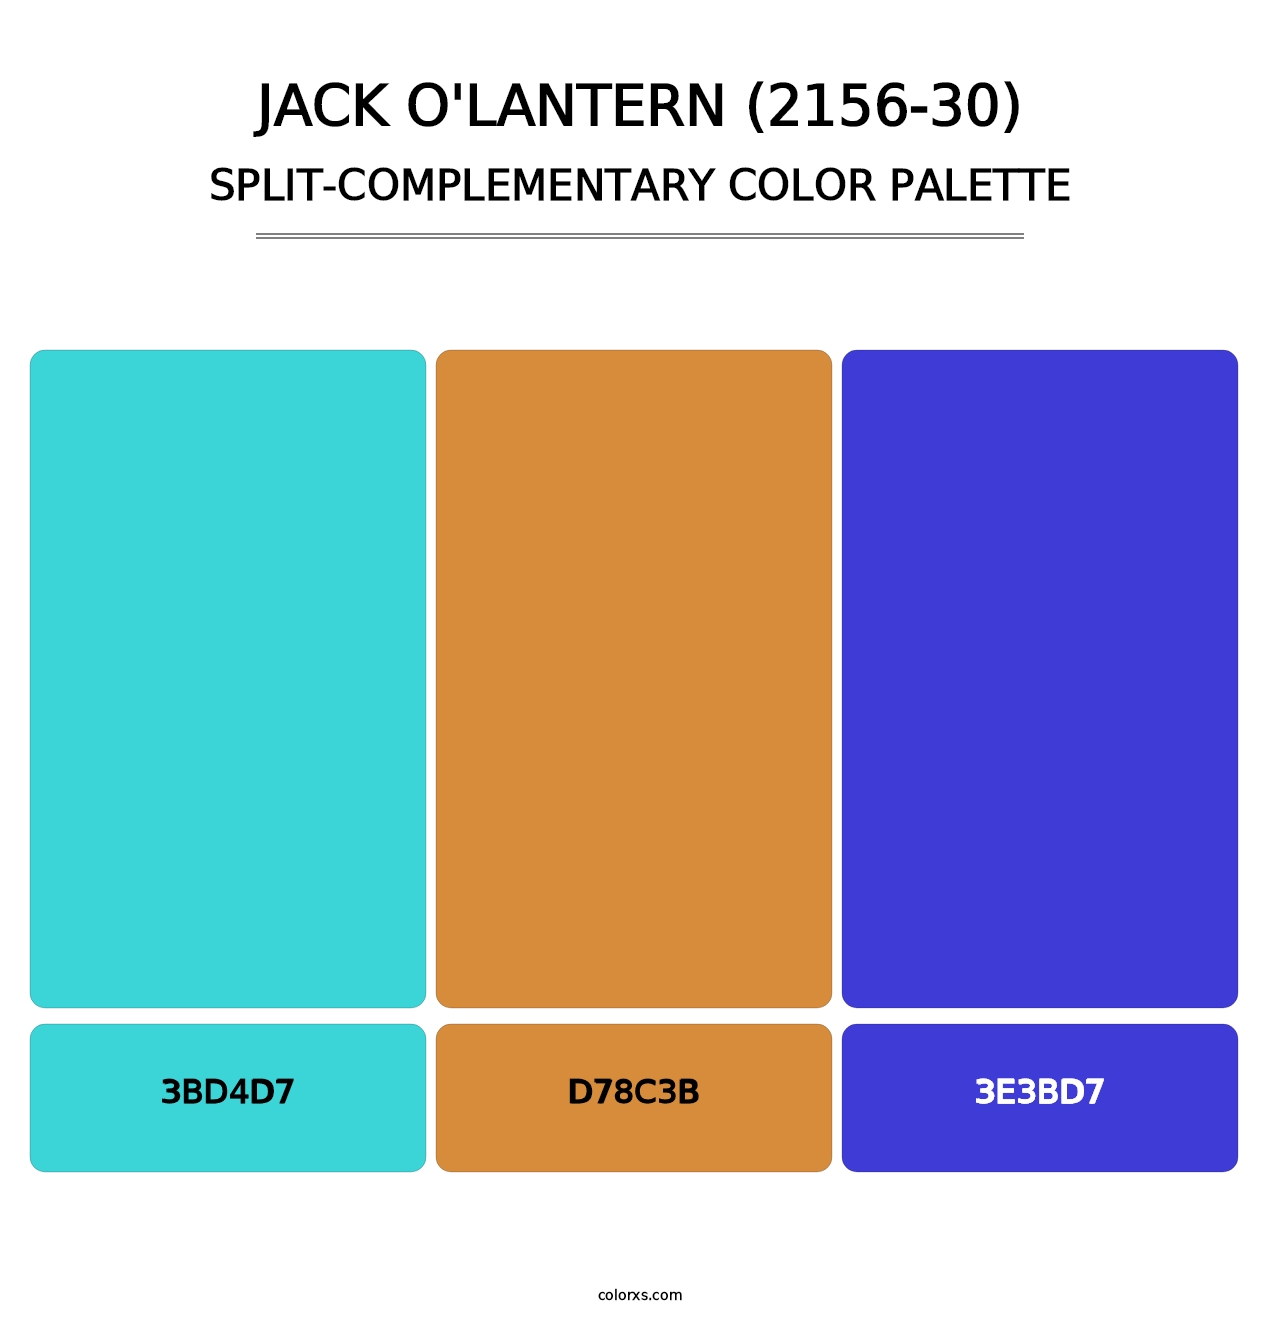 Jack O'Lantern (2156-30) - Split-Complementary Color Palette